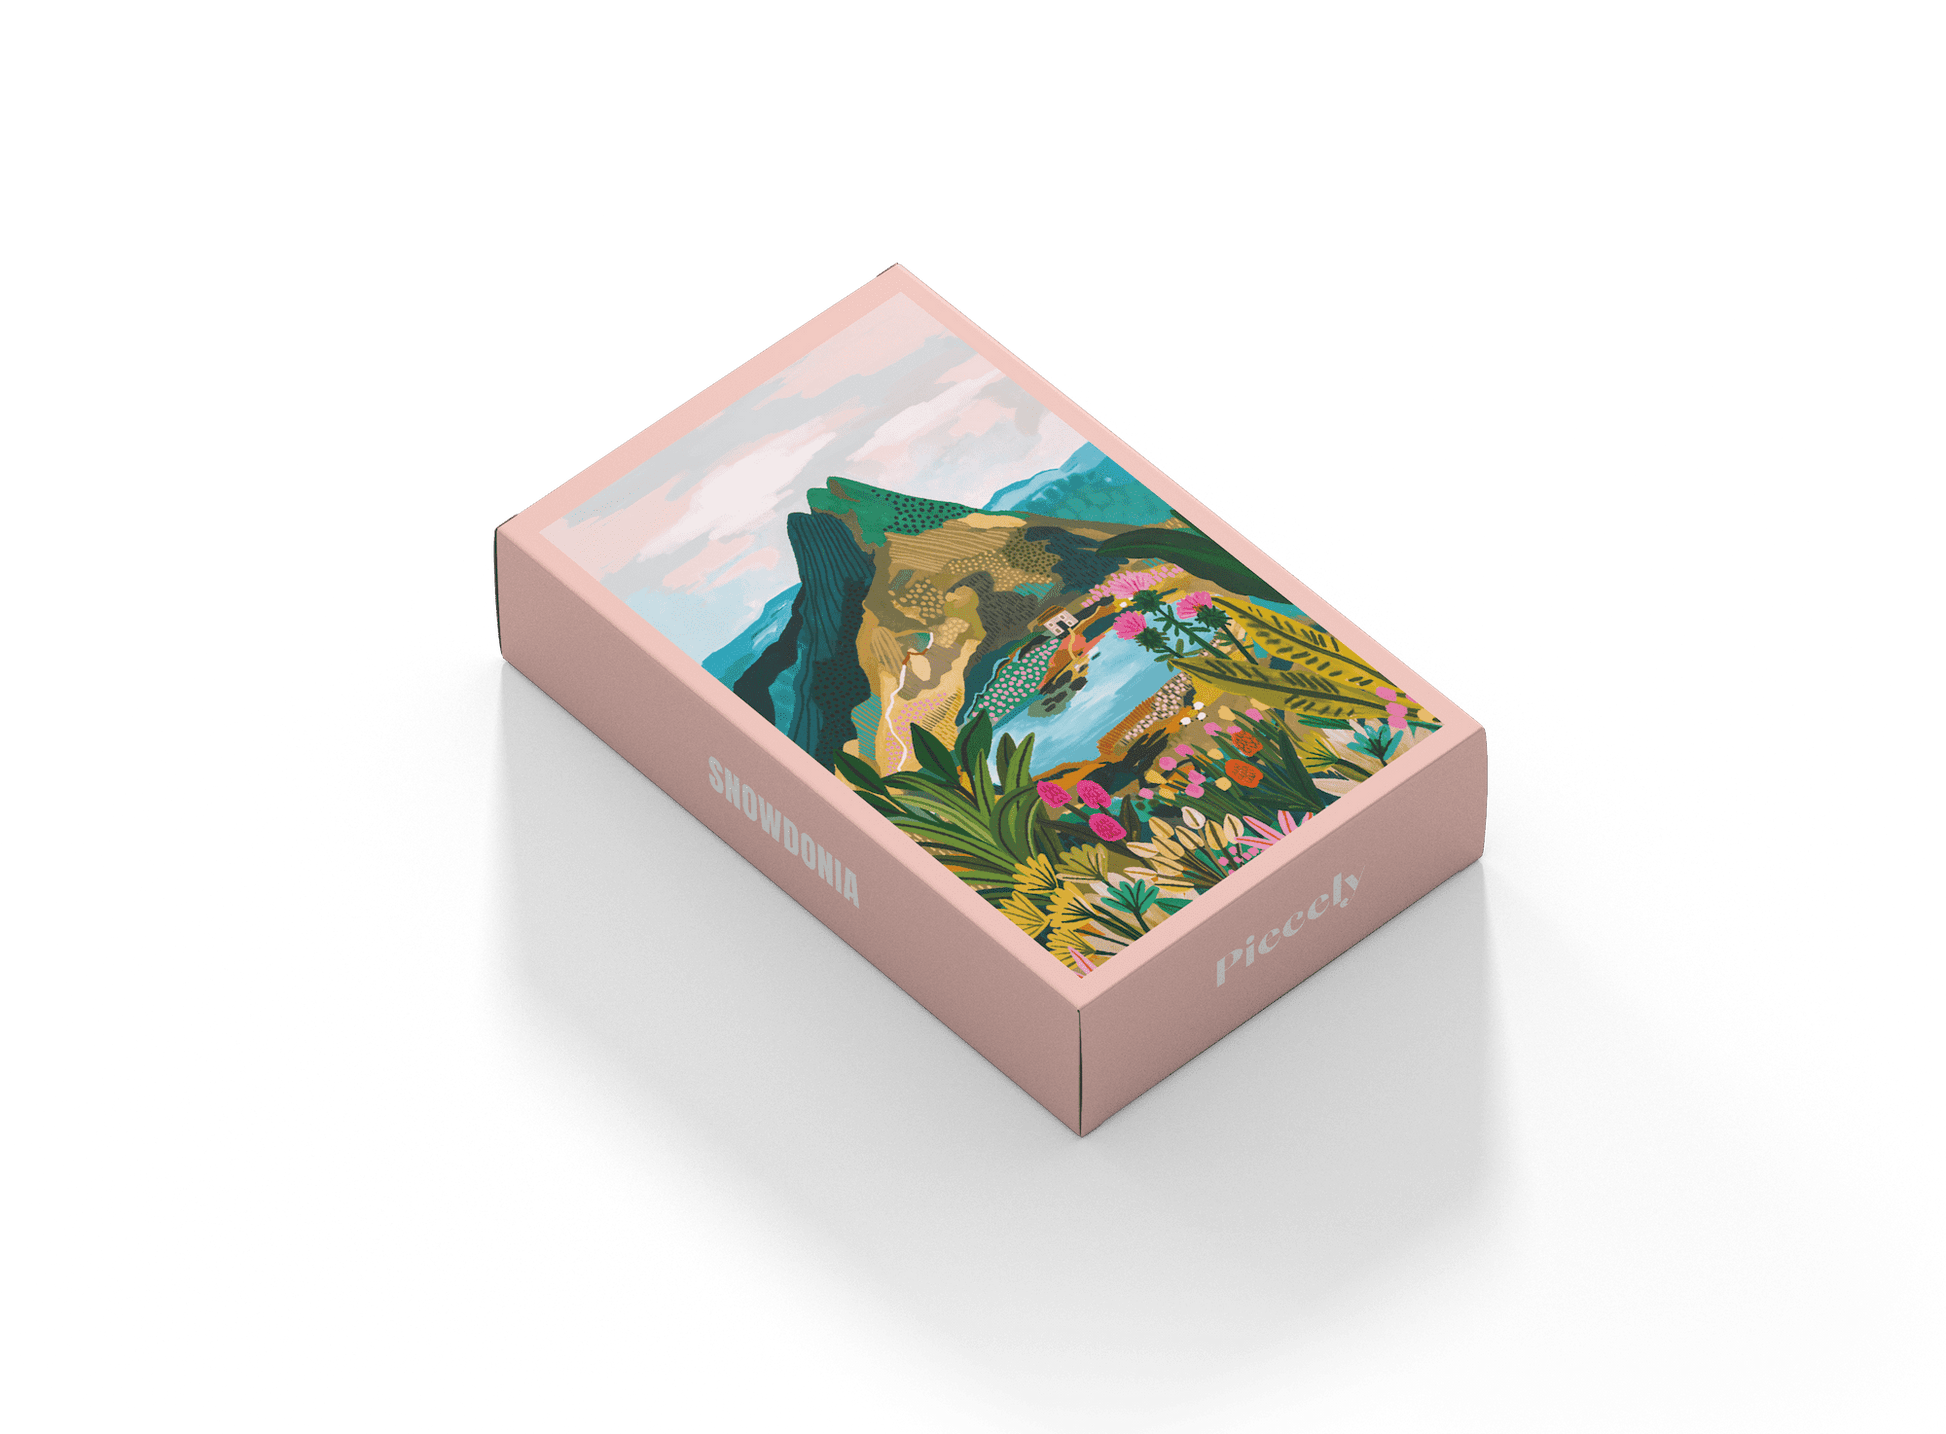 99-teiliges Snowdonia Minipuzzle für Erwachsene, das den Berg Snowdon im Snowdonia Nationalpark in Wales zeigt.